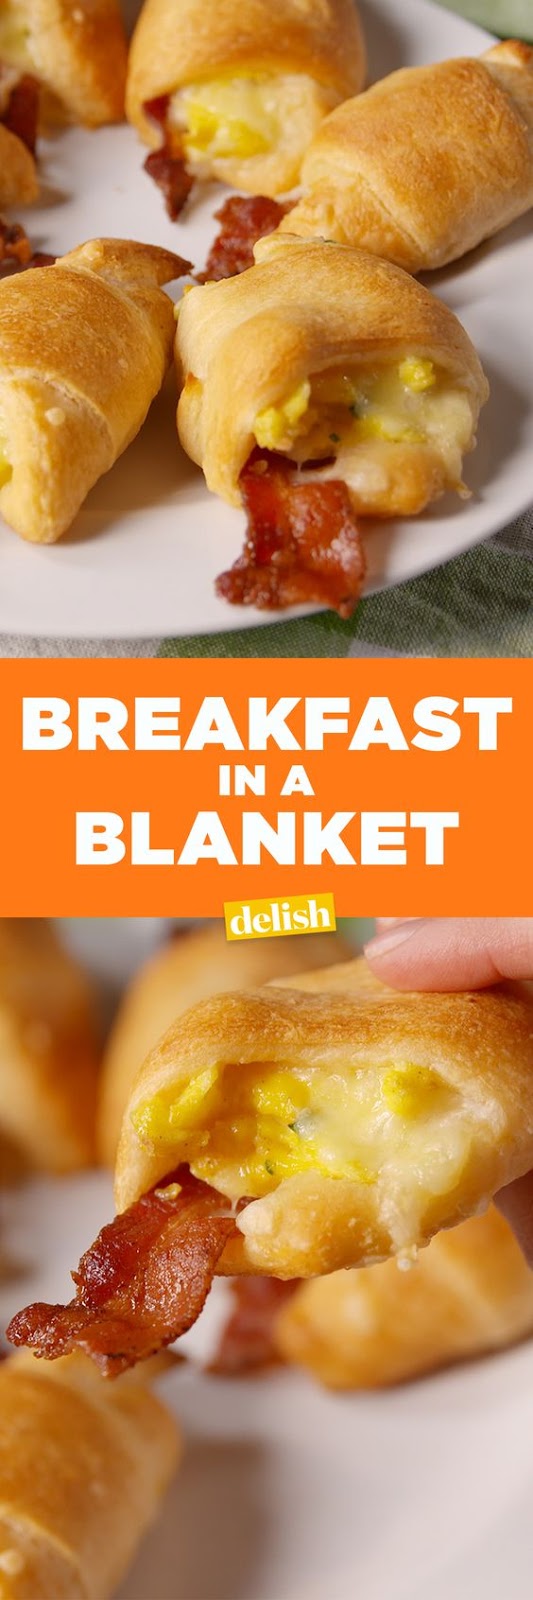 Breakfast in a Blanket - AMAZING YUMMY TASTE